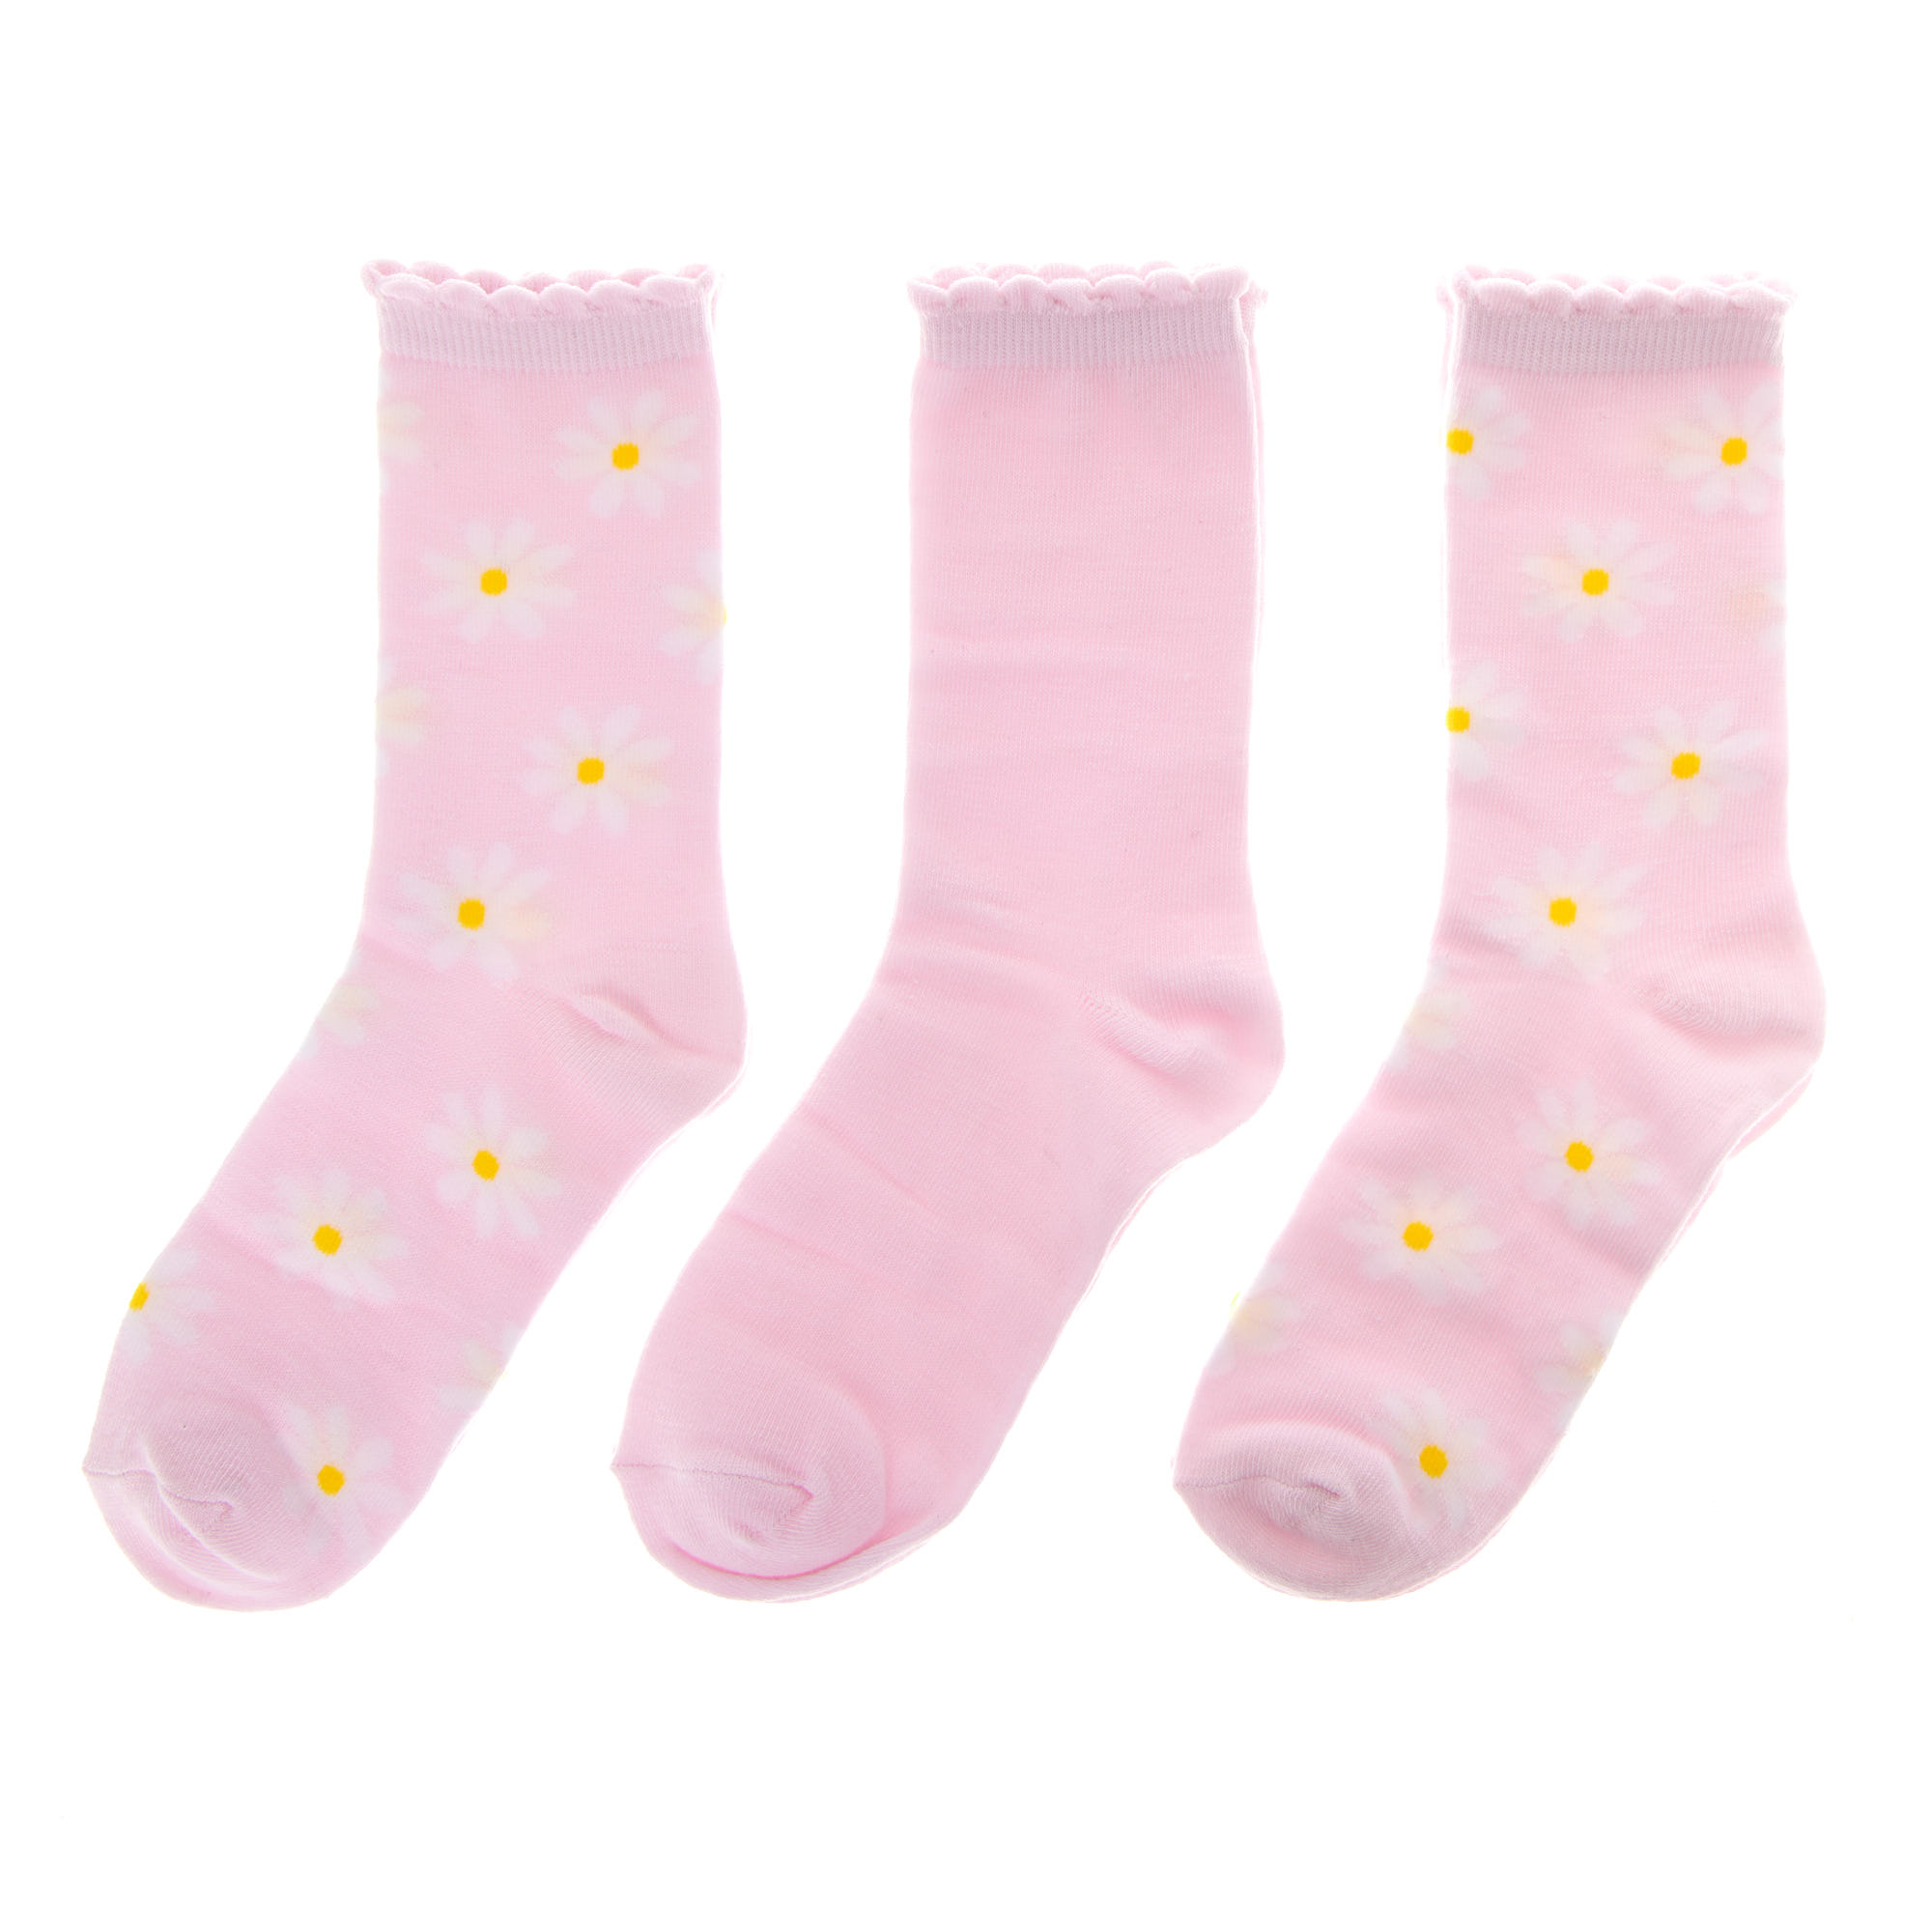 Amazing Mum Socks Gift Set - 3 Pairs